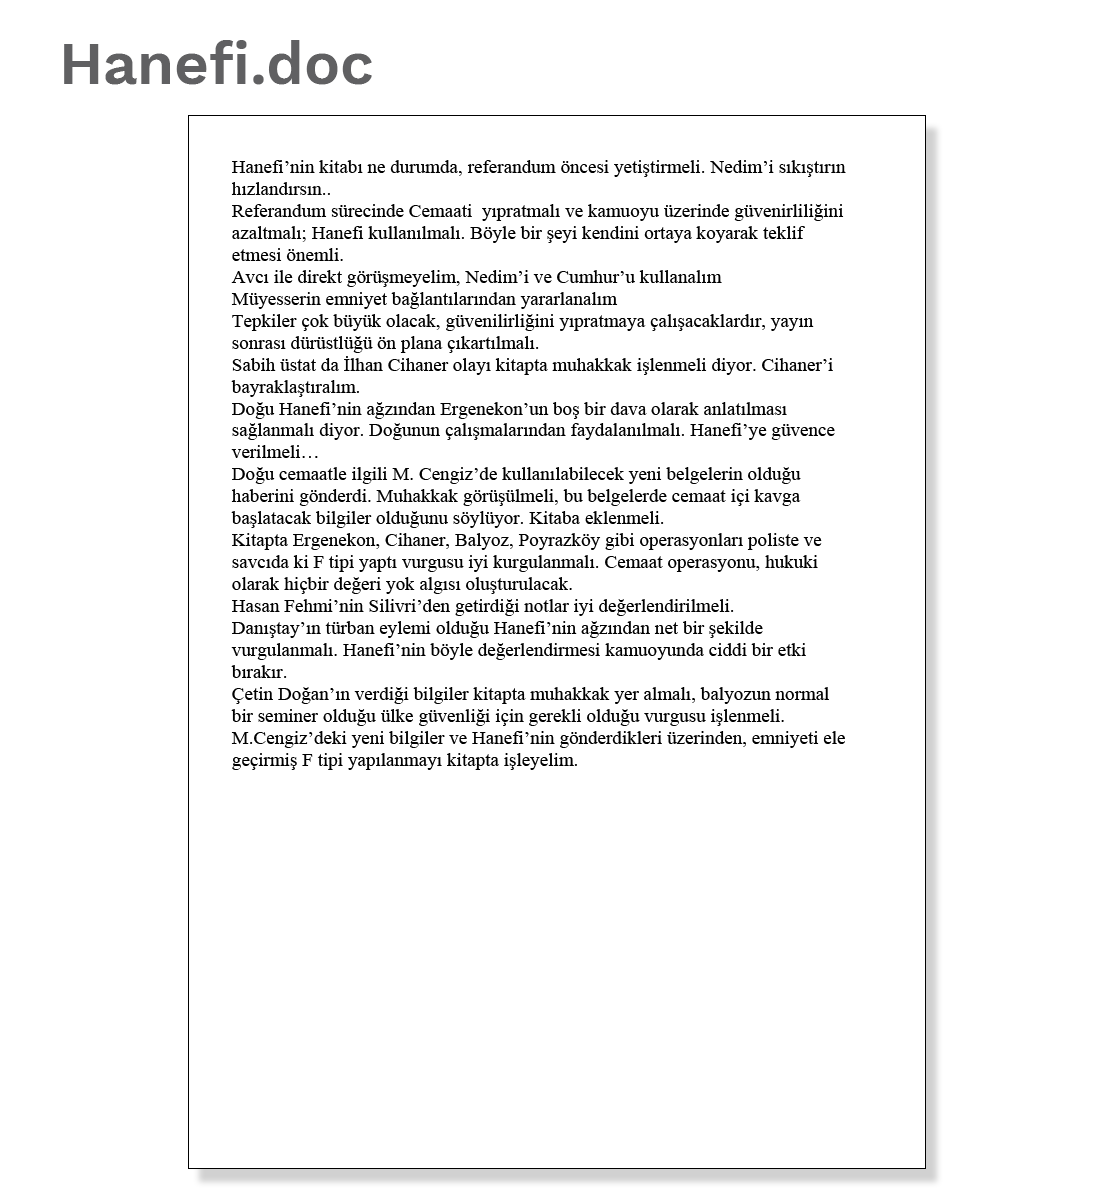 Document 2: Hanefi.doc